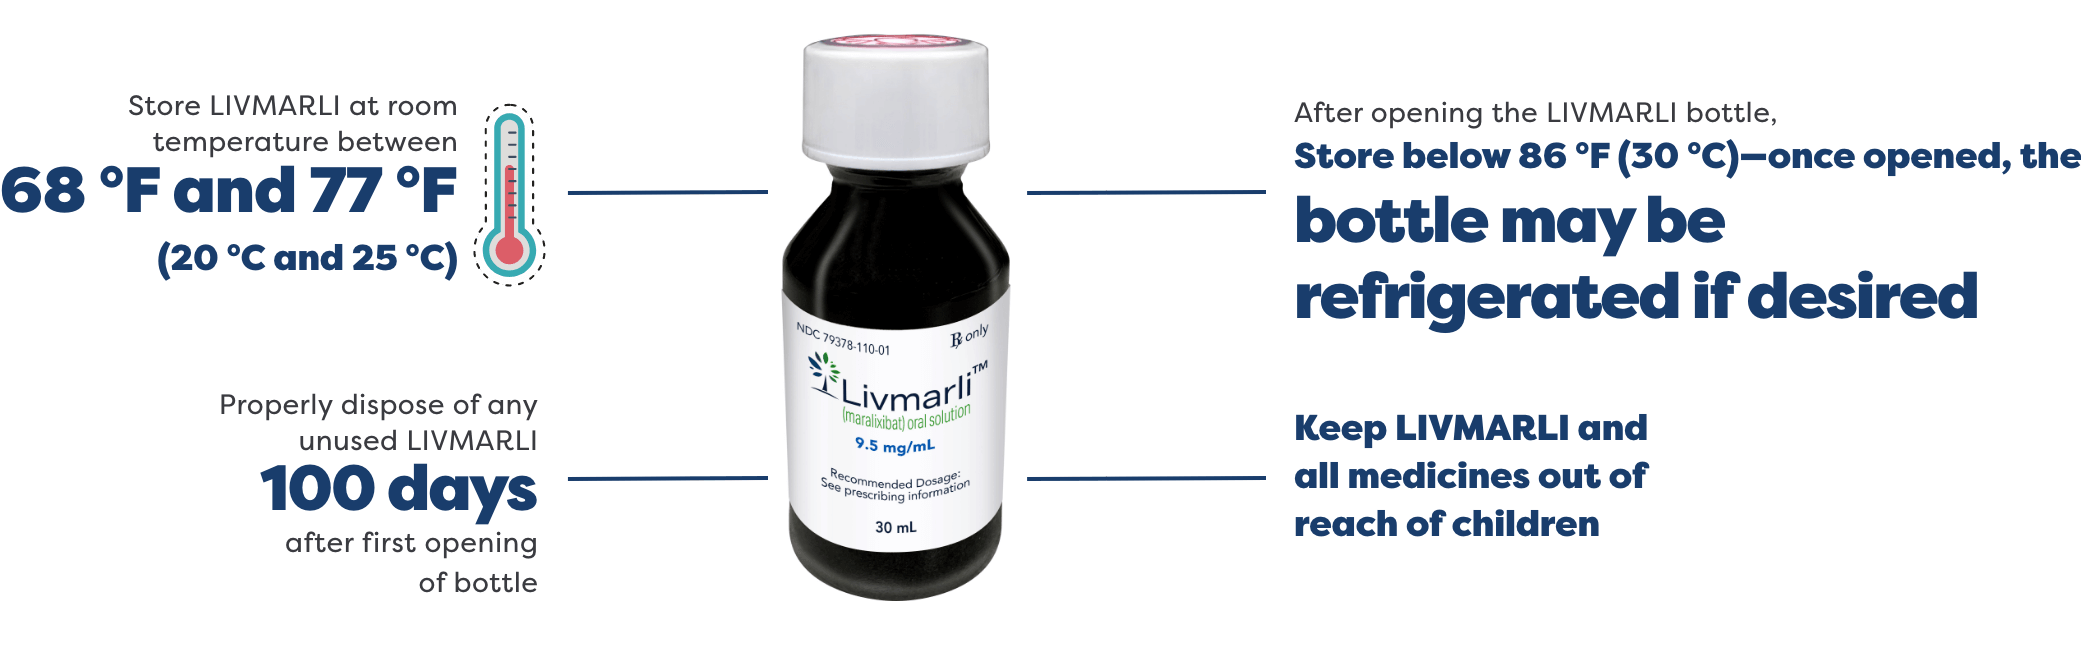 LIVMARLI bottle